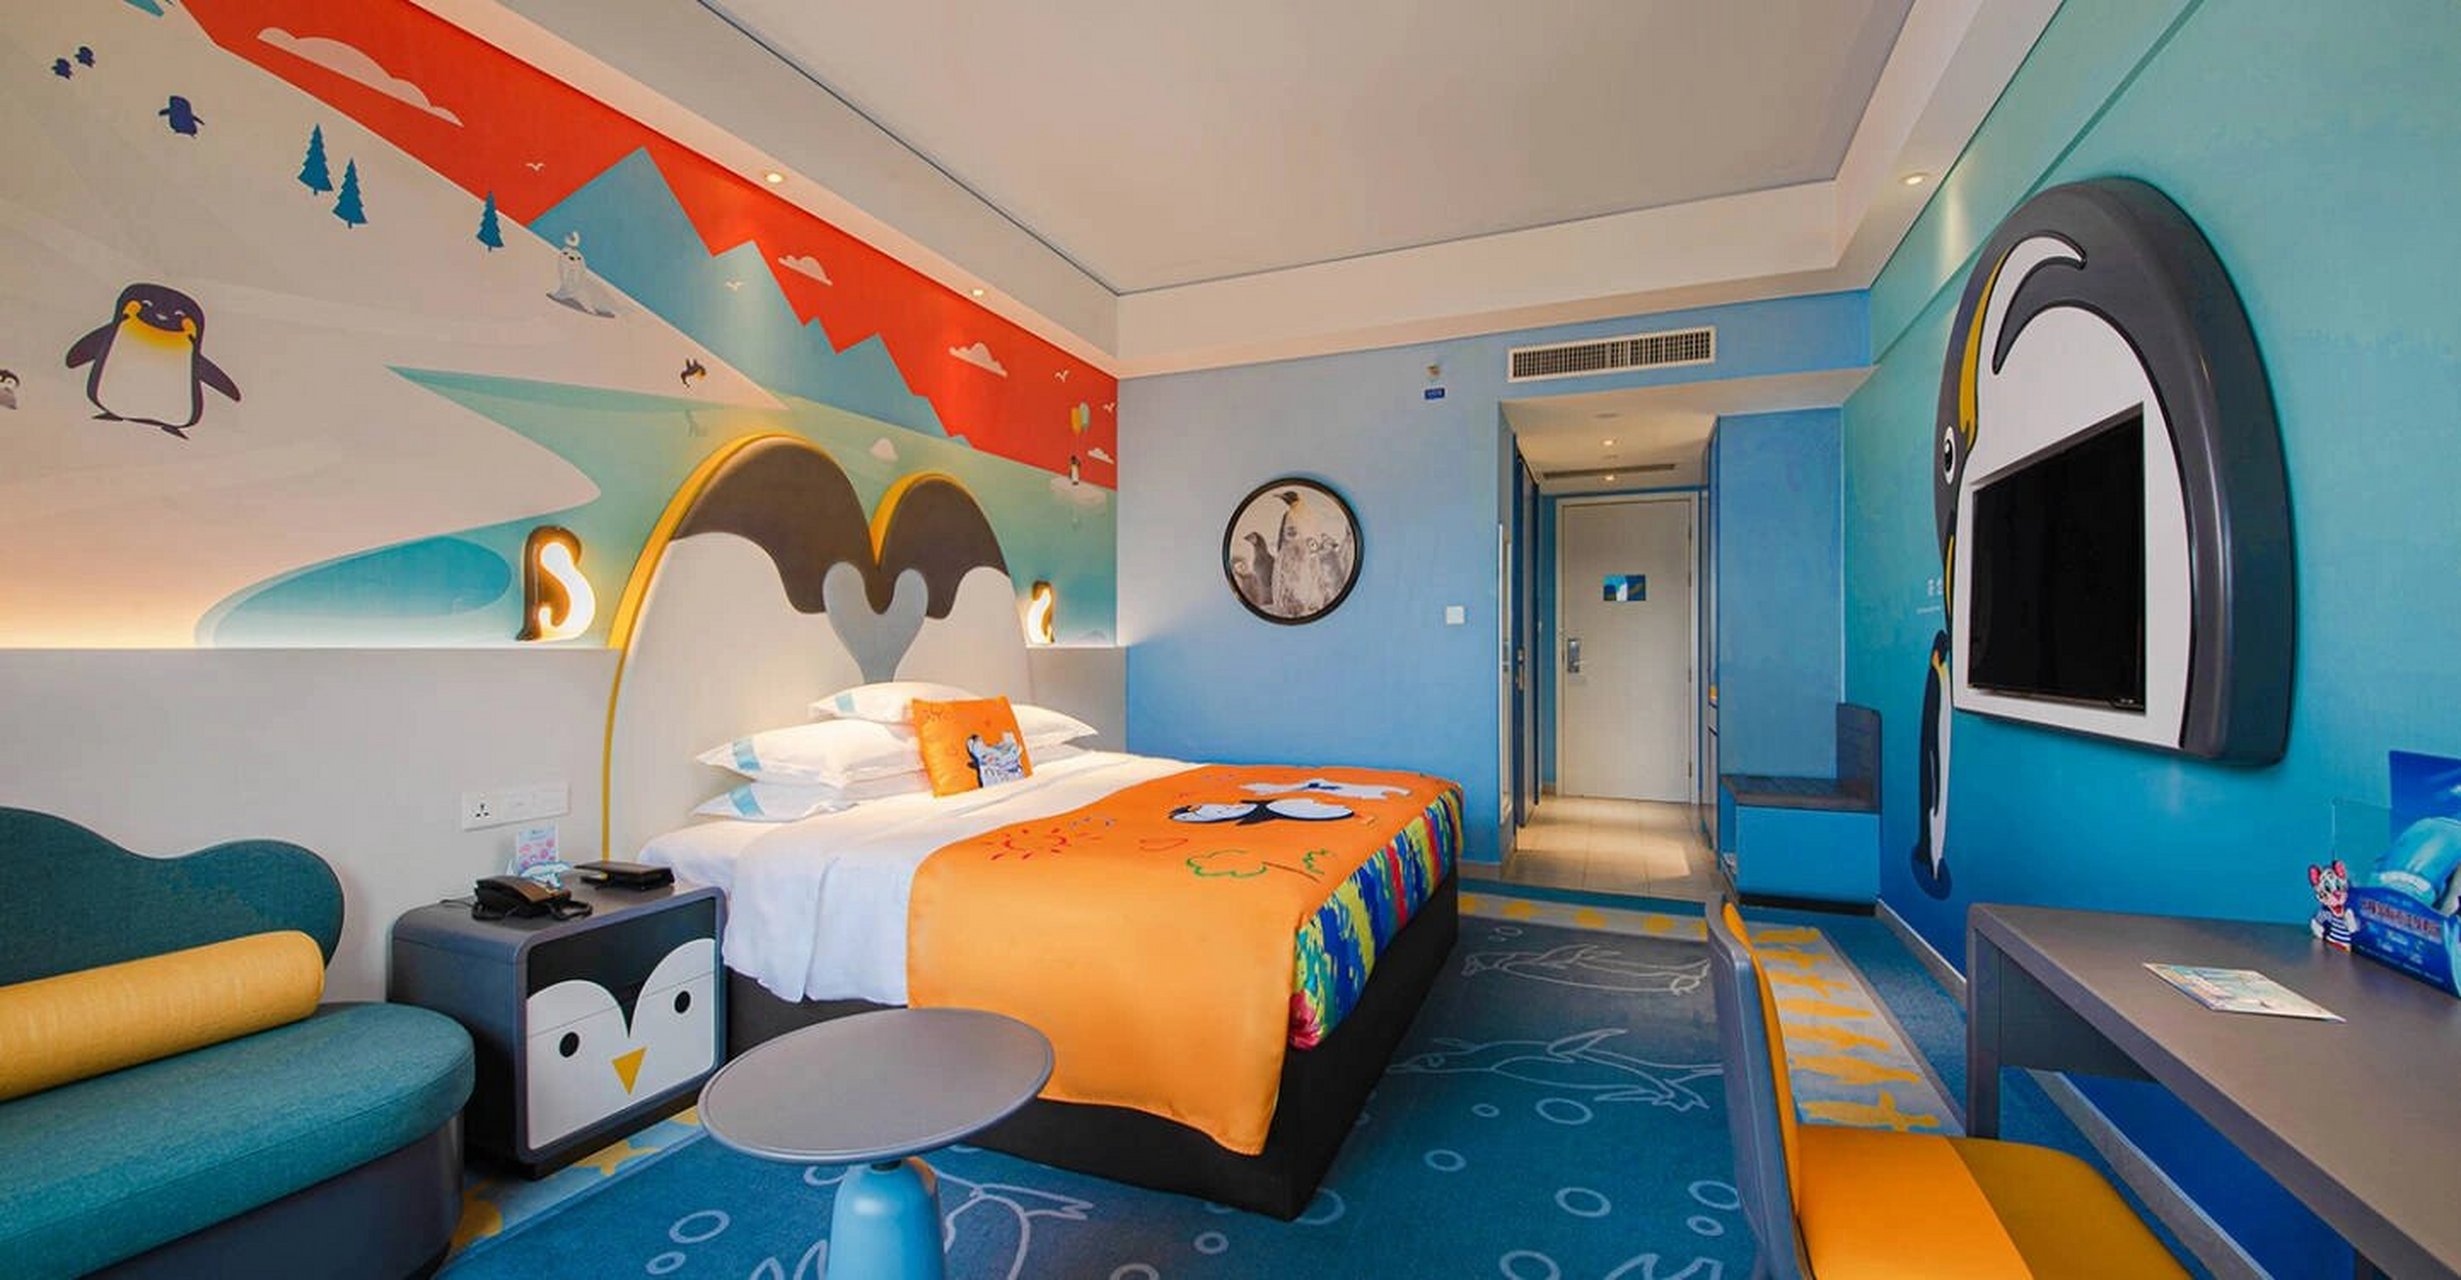 珠海长隆企鹅酒店房型图片